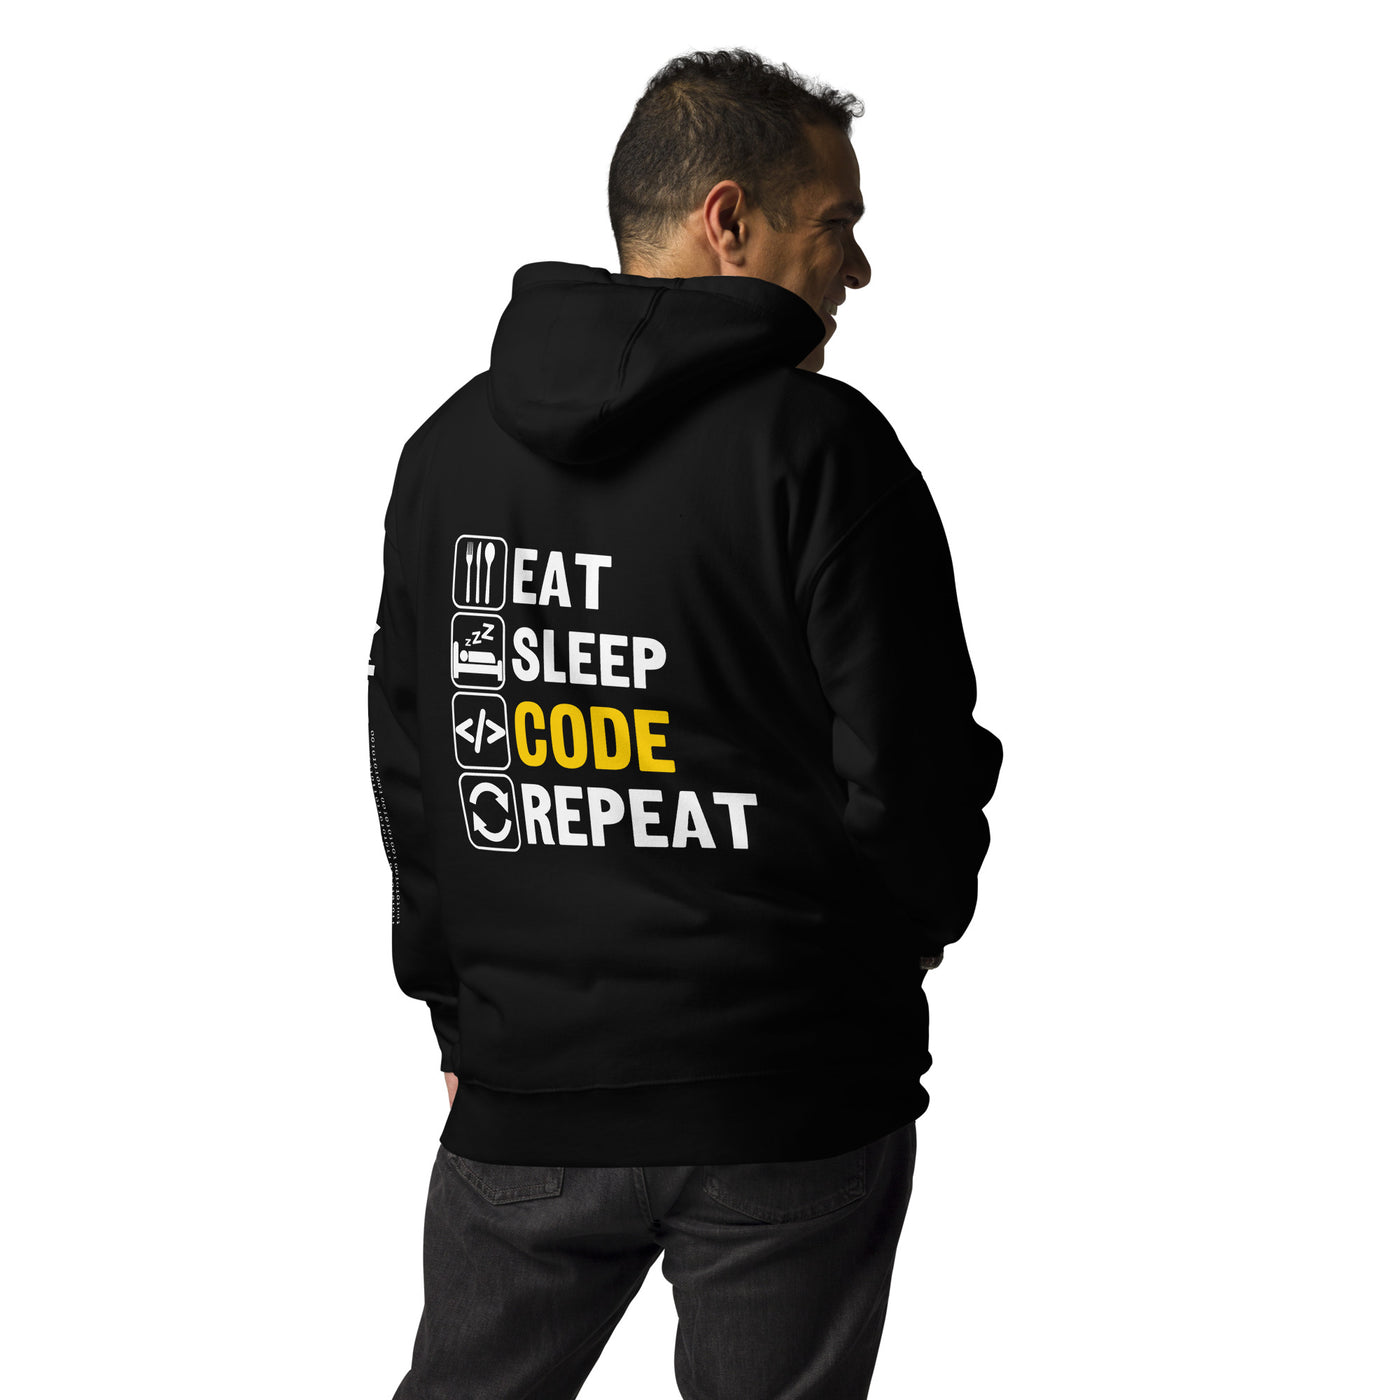 Eat Sleep Code Repeat - Unisex Hoodie (back print)